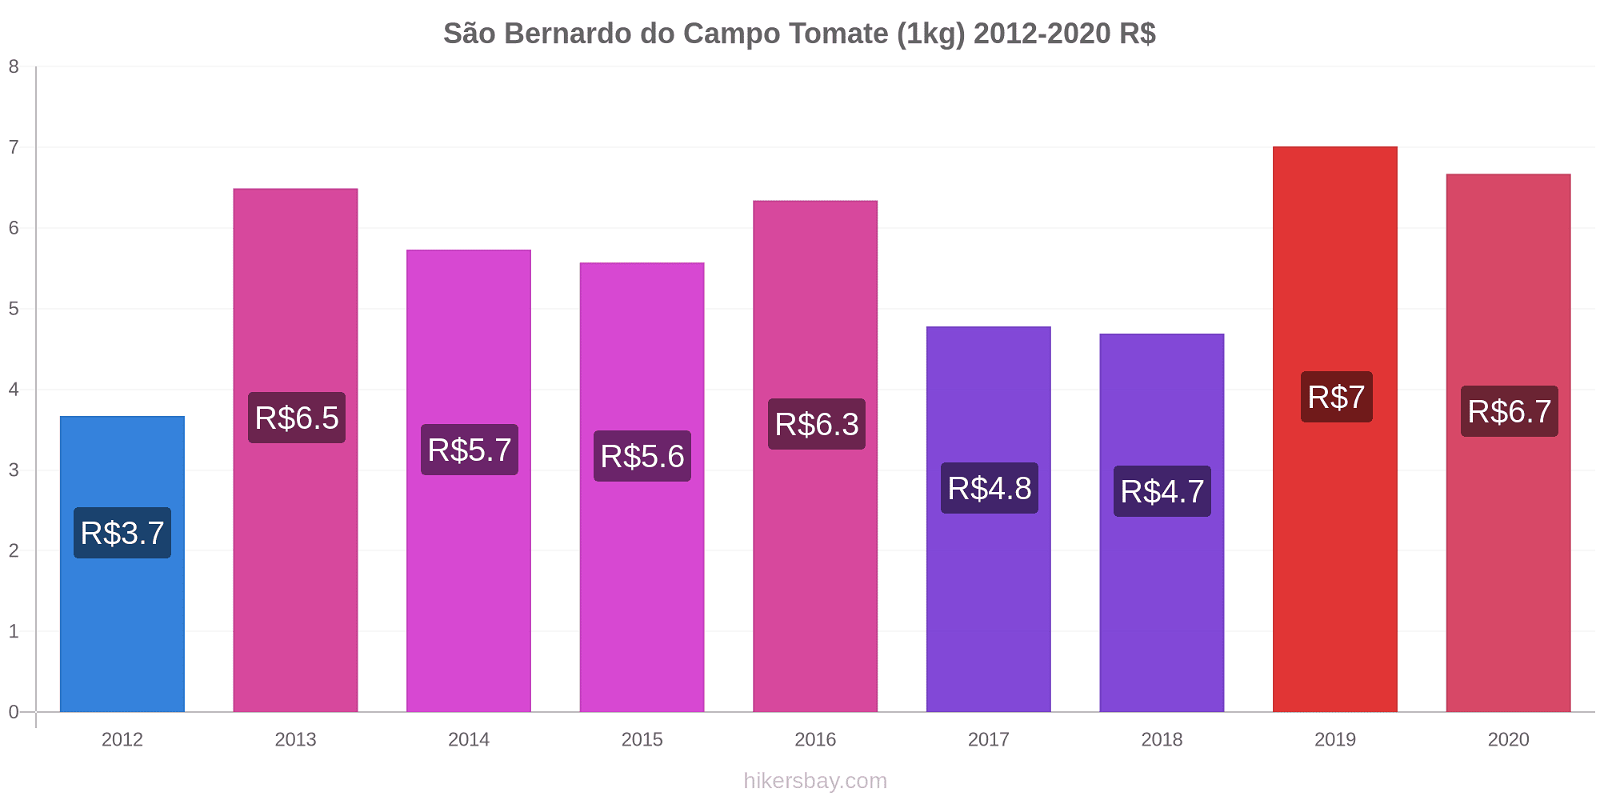 São Bernardo do Campo cambios de precios Tomate (1kg) hikersbay.com